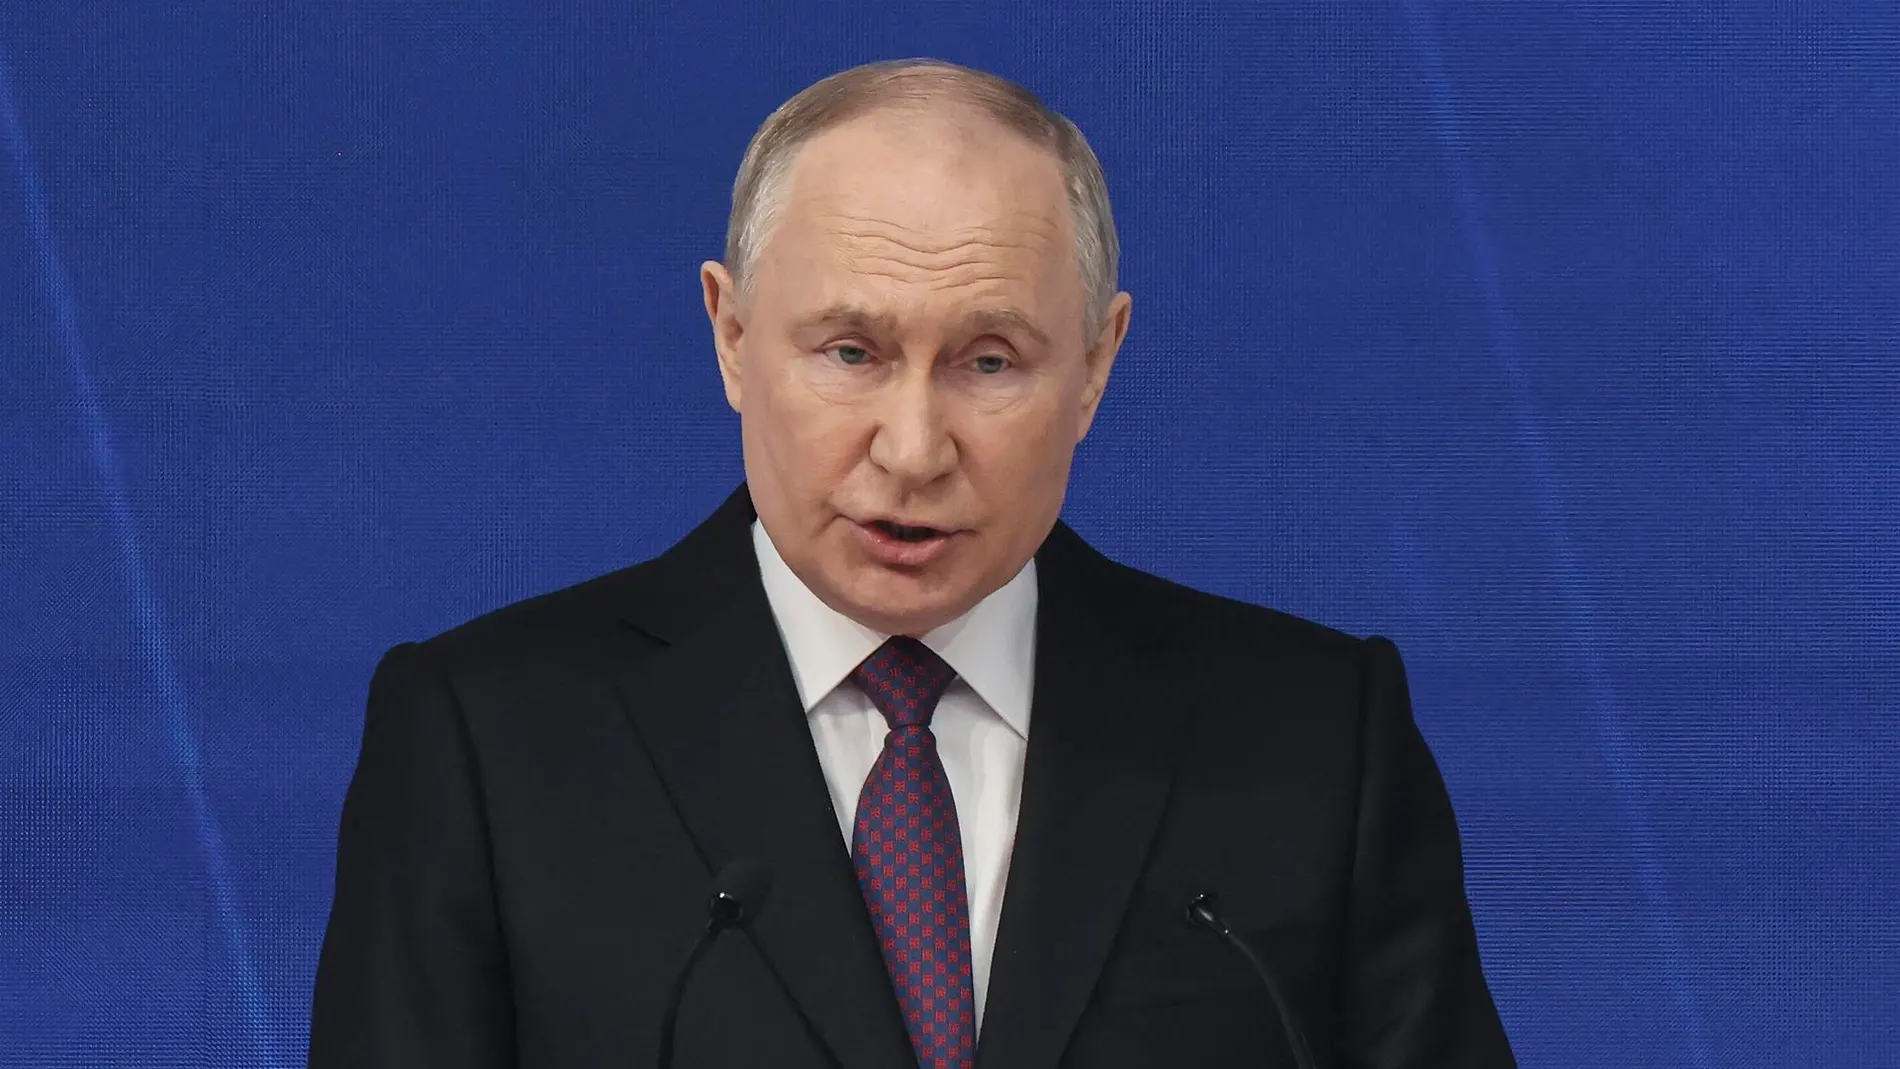 El presidente de Rusia, Vladimir Putin, fue reelegido este domingo para un quinto mandato